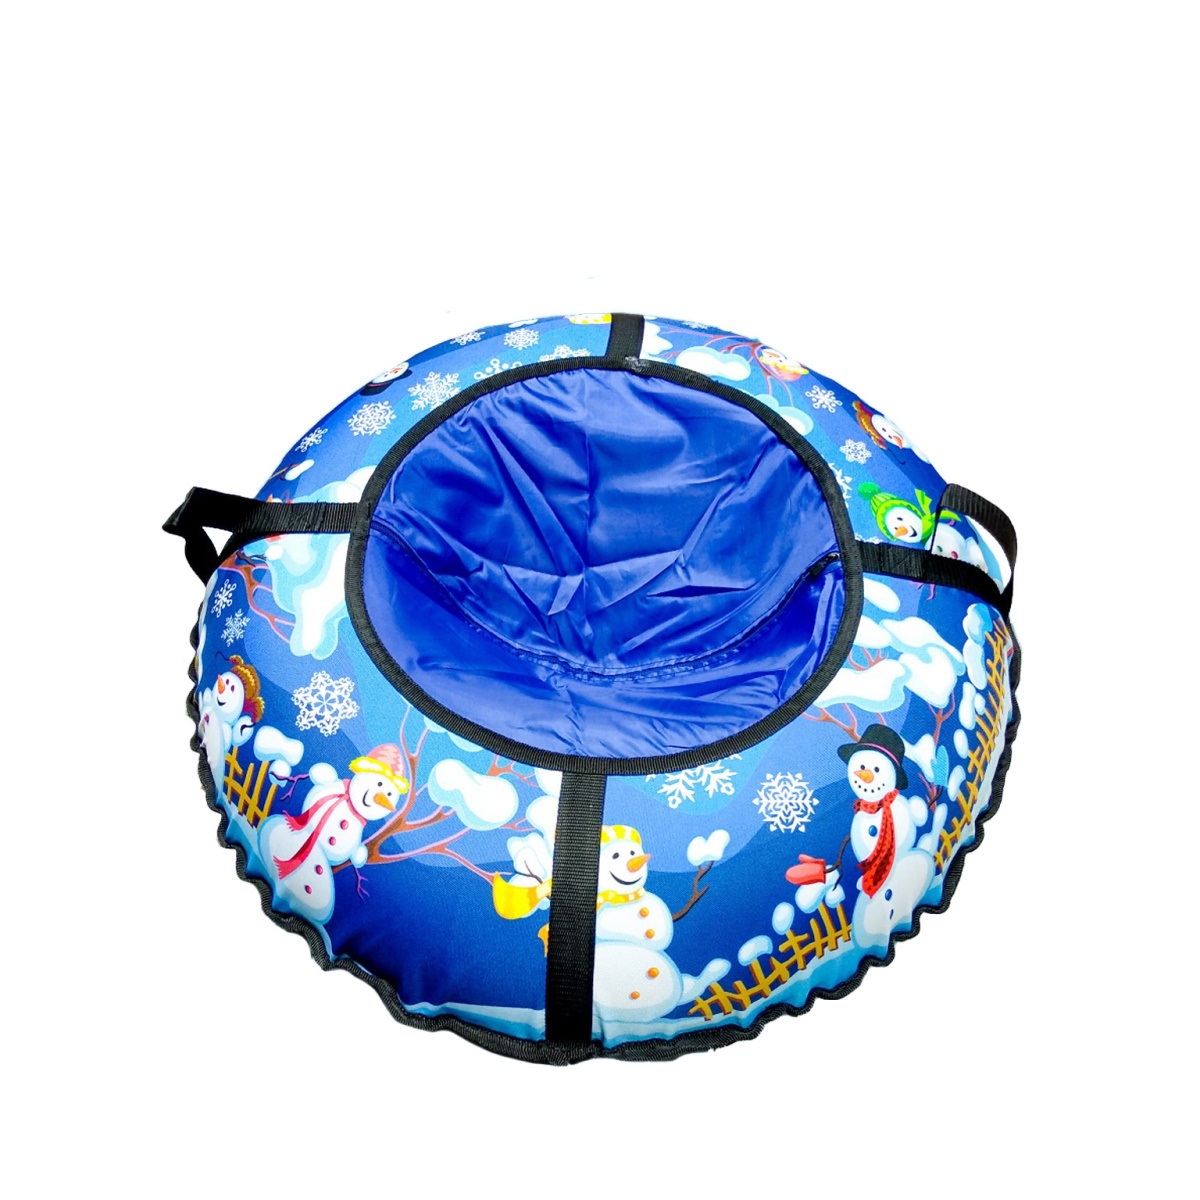 Тюбинг Fani and Sani диаметр 80 см для катания надувные санки детские - фото 1